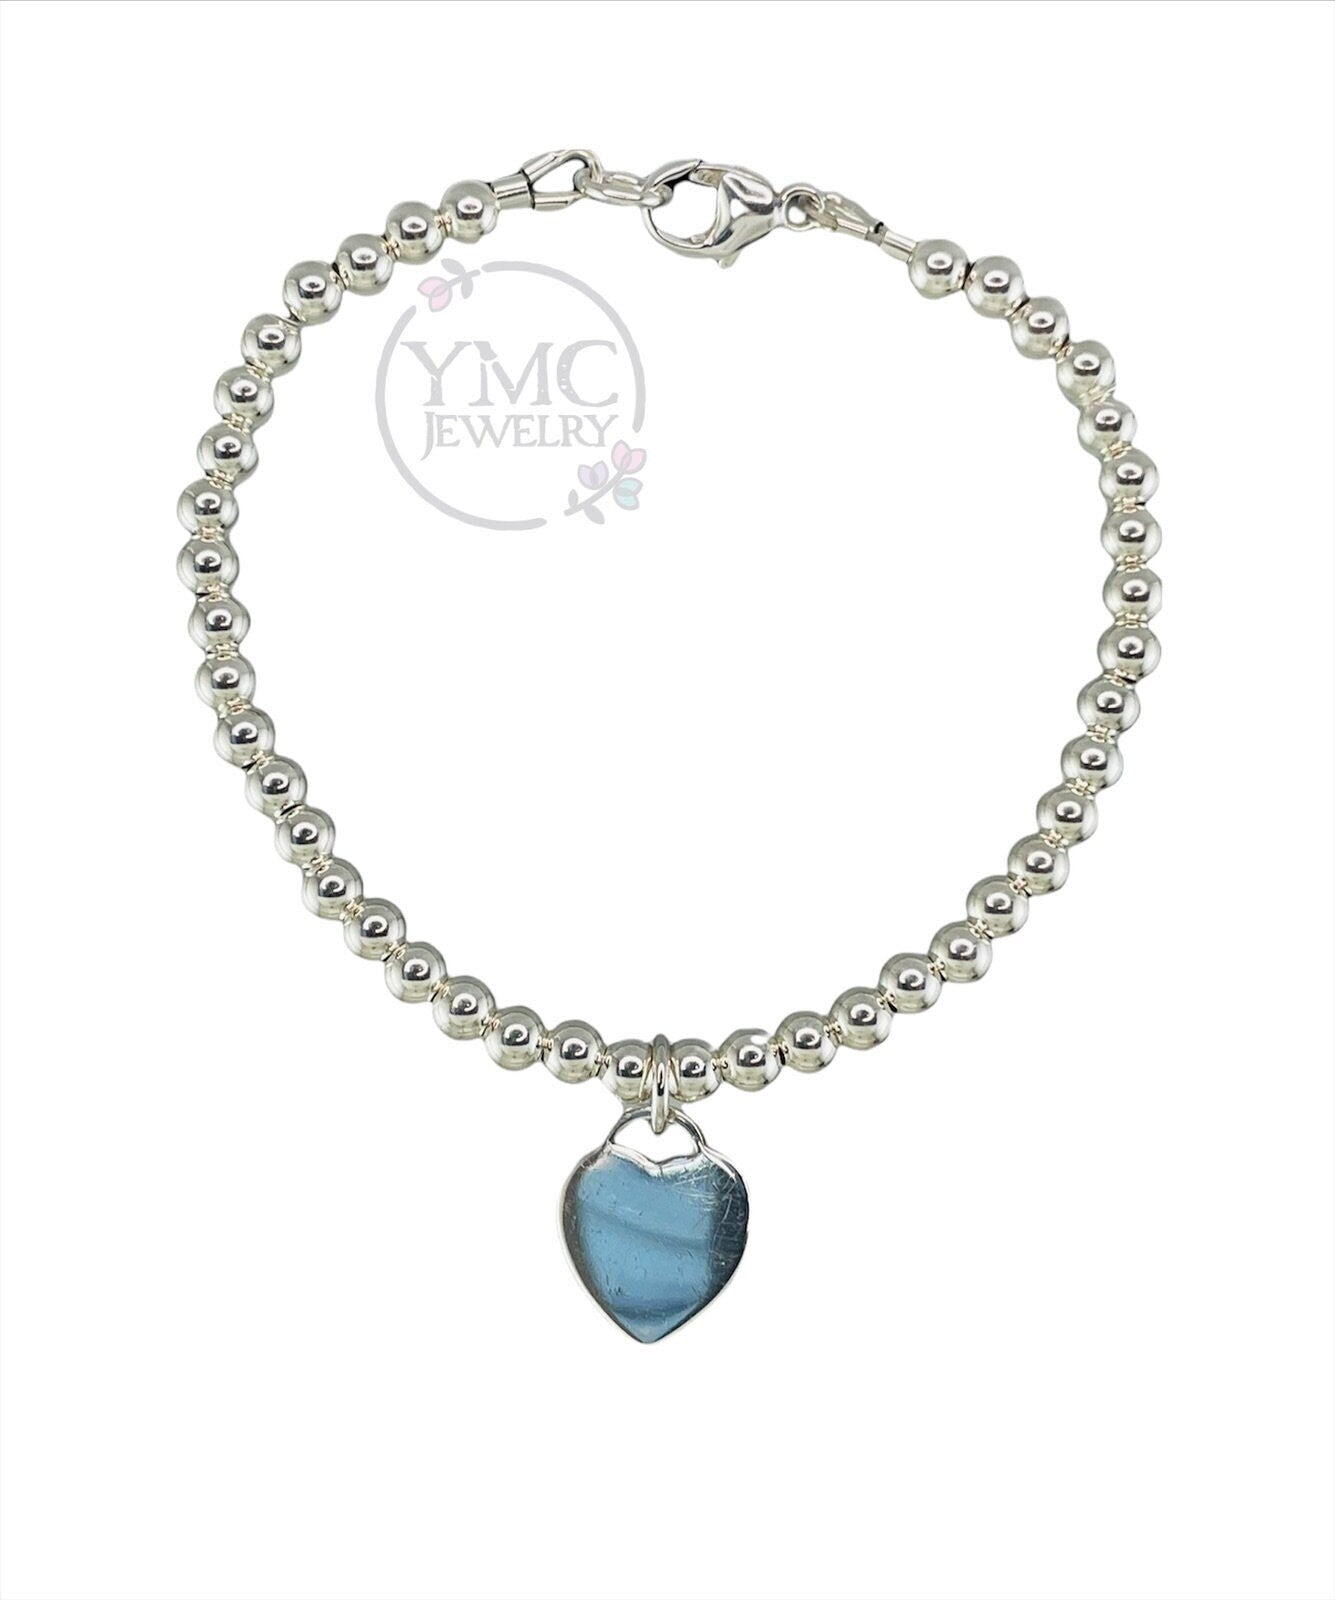 4mm Sterling Silver Beaded Ball Heart Bracelet,Stackable bracelet,Silver Ball Bracelet